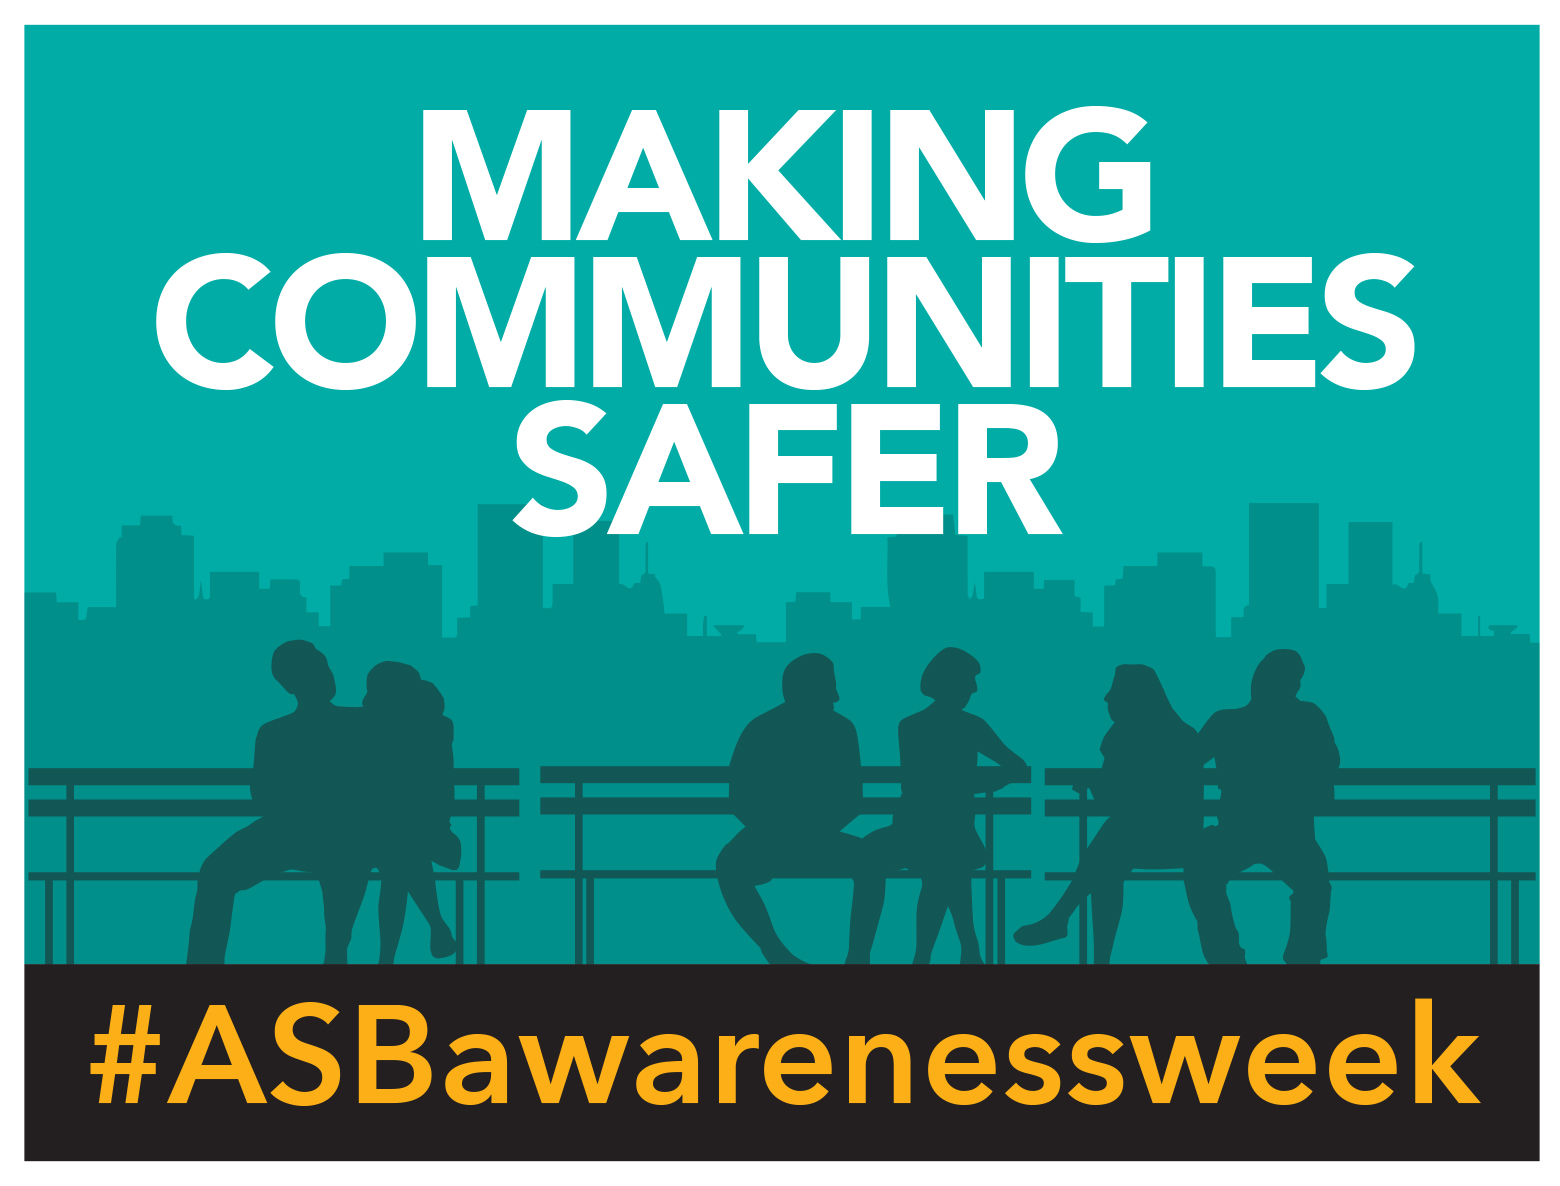 Making communities safer #ASBawarenessweek